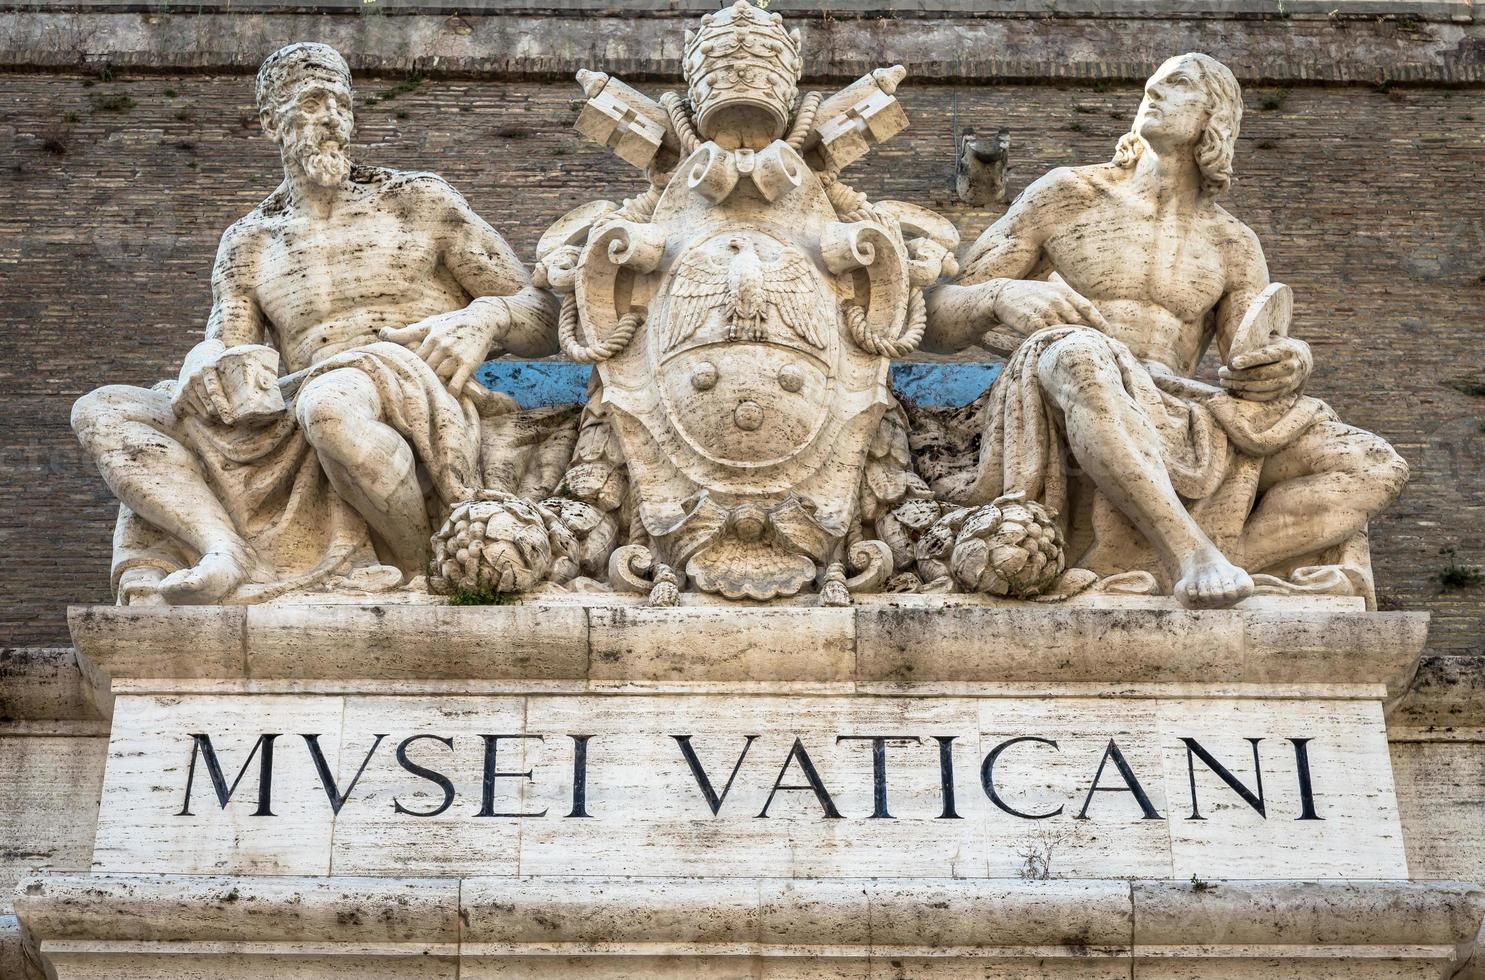 ingången till den berömda Vatikanmuseets byggnad i Rom, Italien, 2020 foto